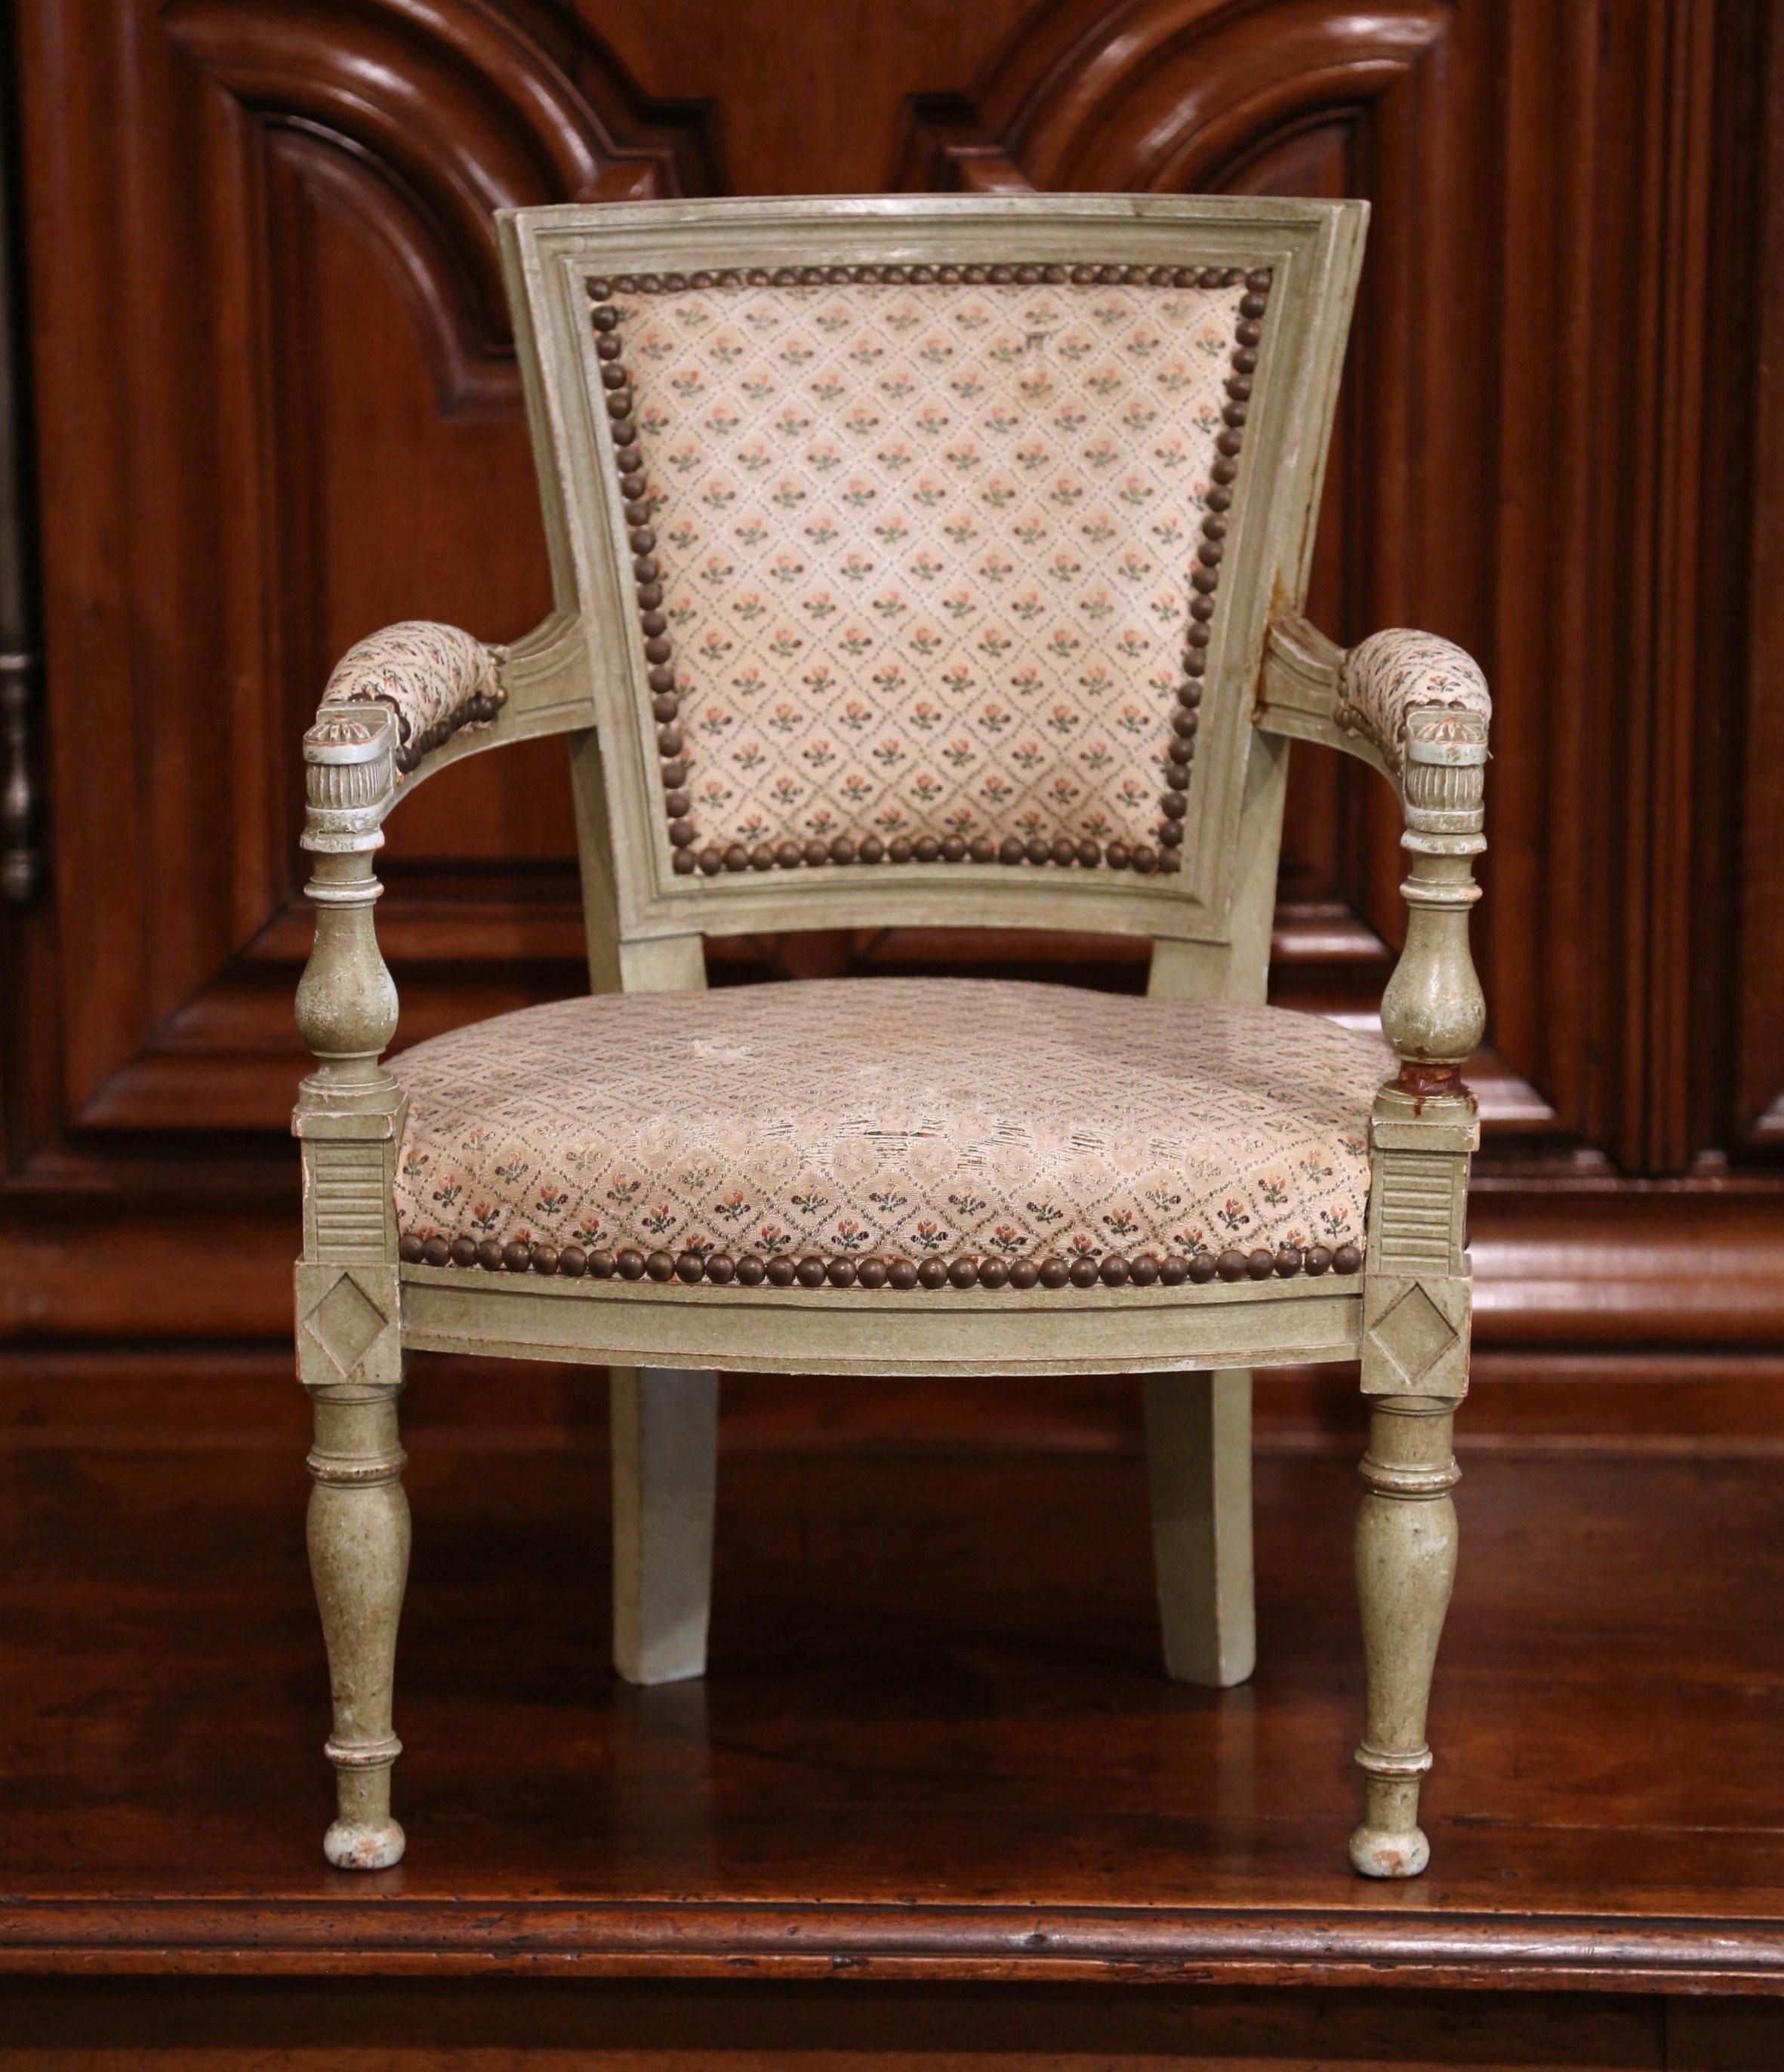 Verleihen Sie einem familienfreundlichen Wohn- oder Kinderzimmer mit diesem eleganten Kindersessel Charme. Der um 1860 in Frankreich gefertigte, bemalte antike Stuhl hat eine quadratische Rückenlehne, zwei geschnitzte Armlehnen mit floralen